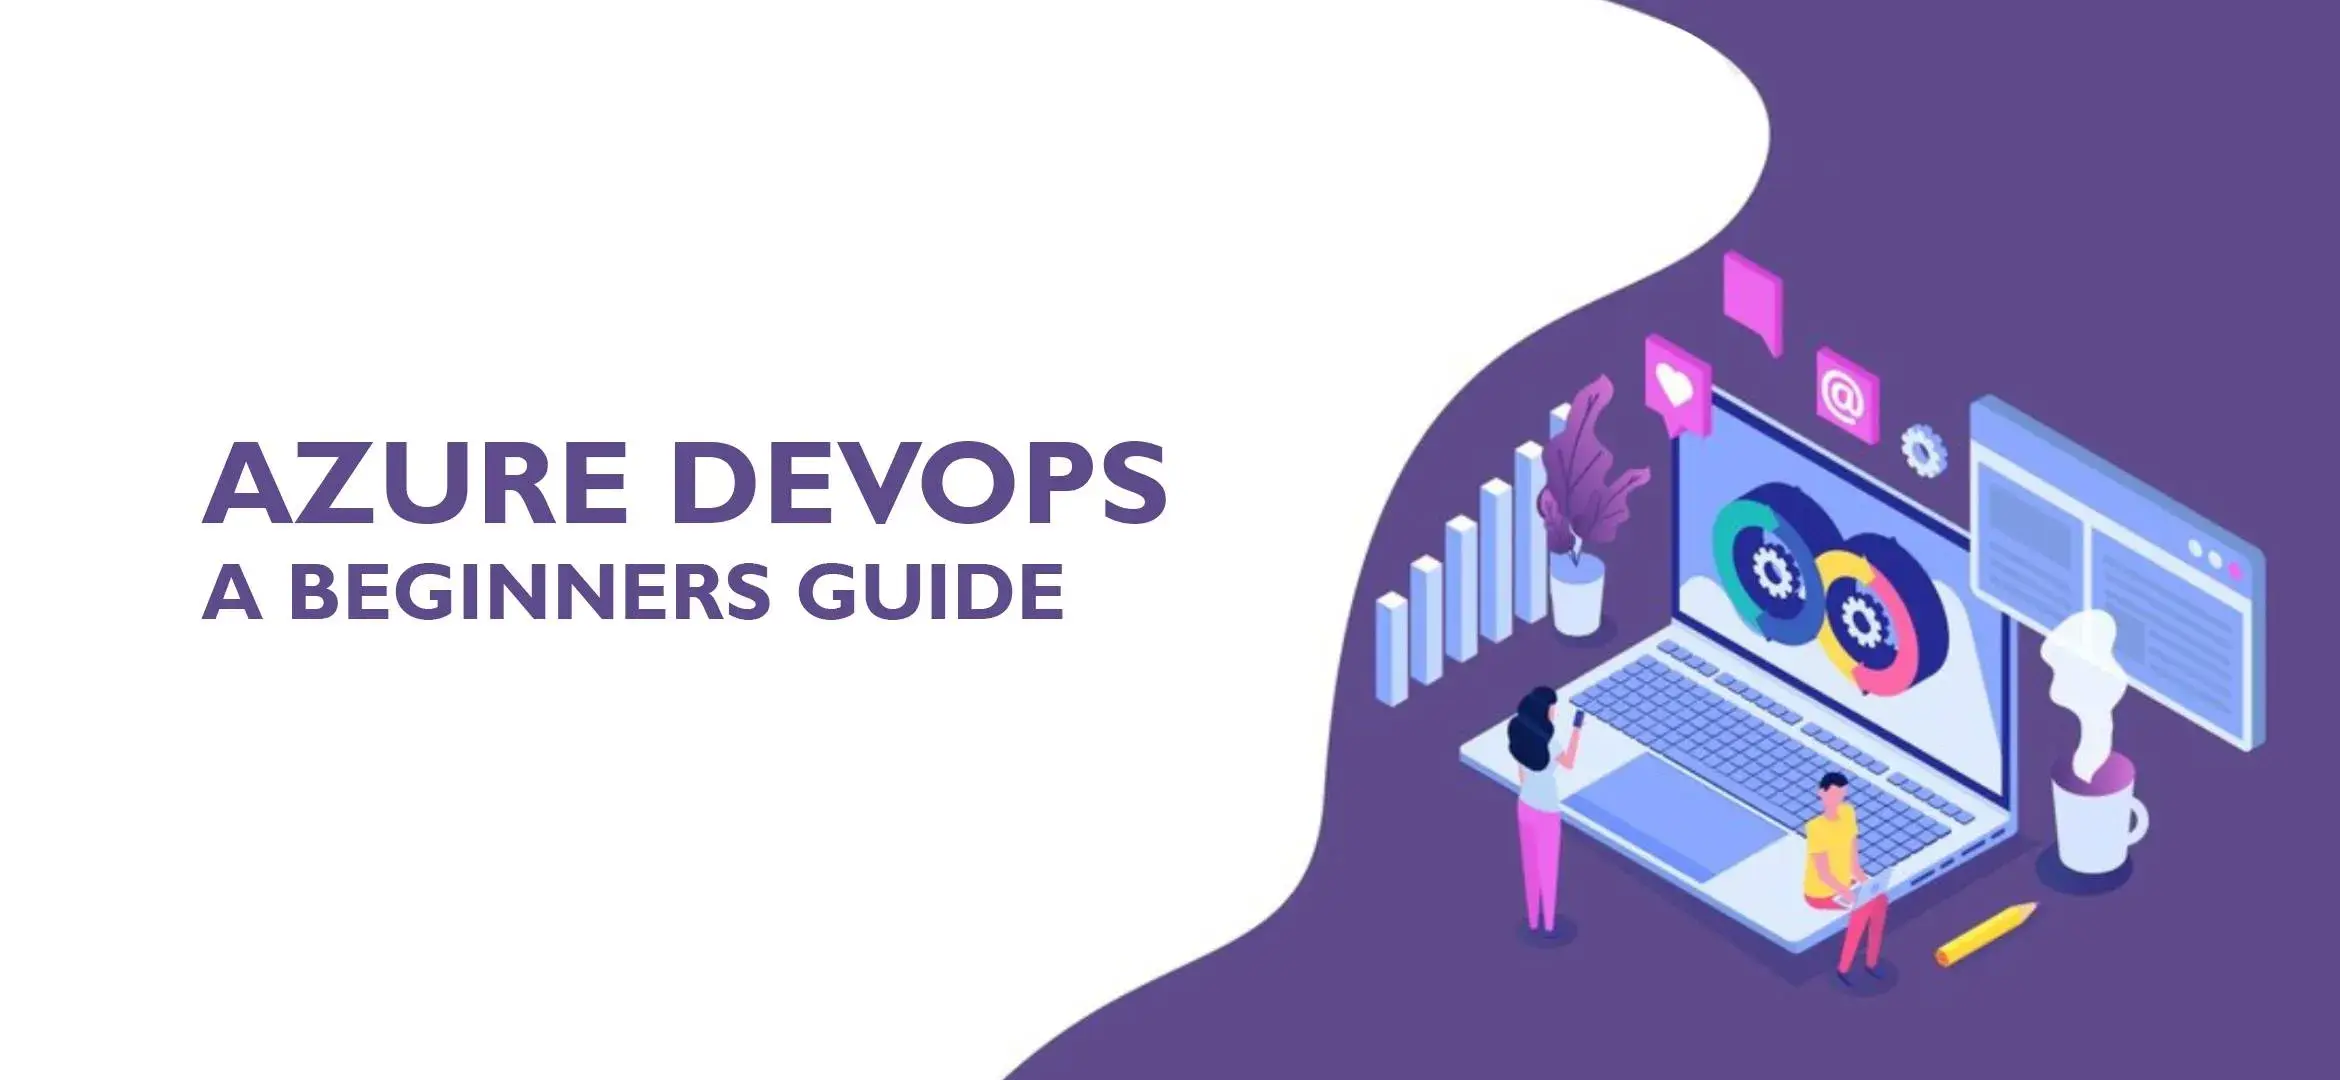 Azure DevOps: A Beginner’s Guide